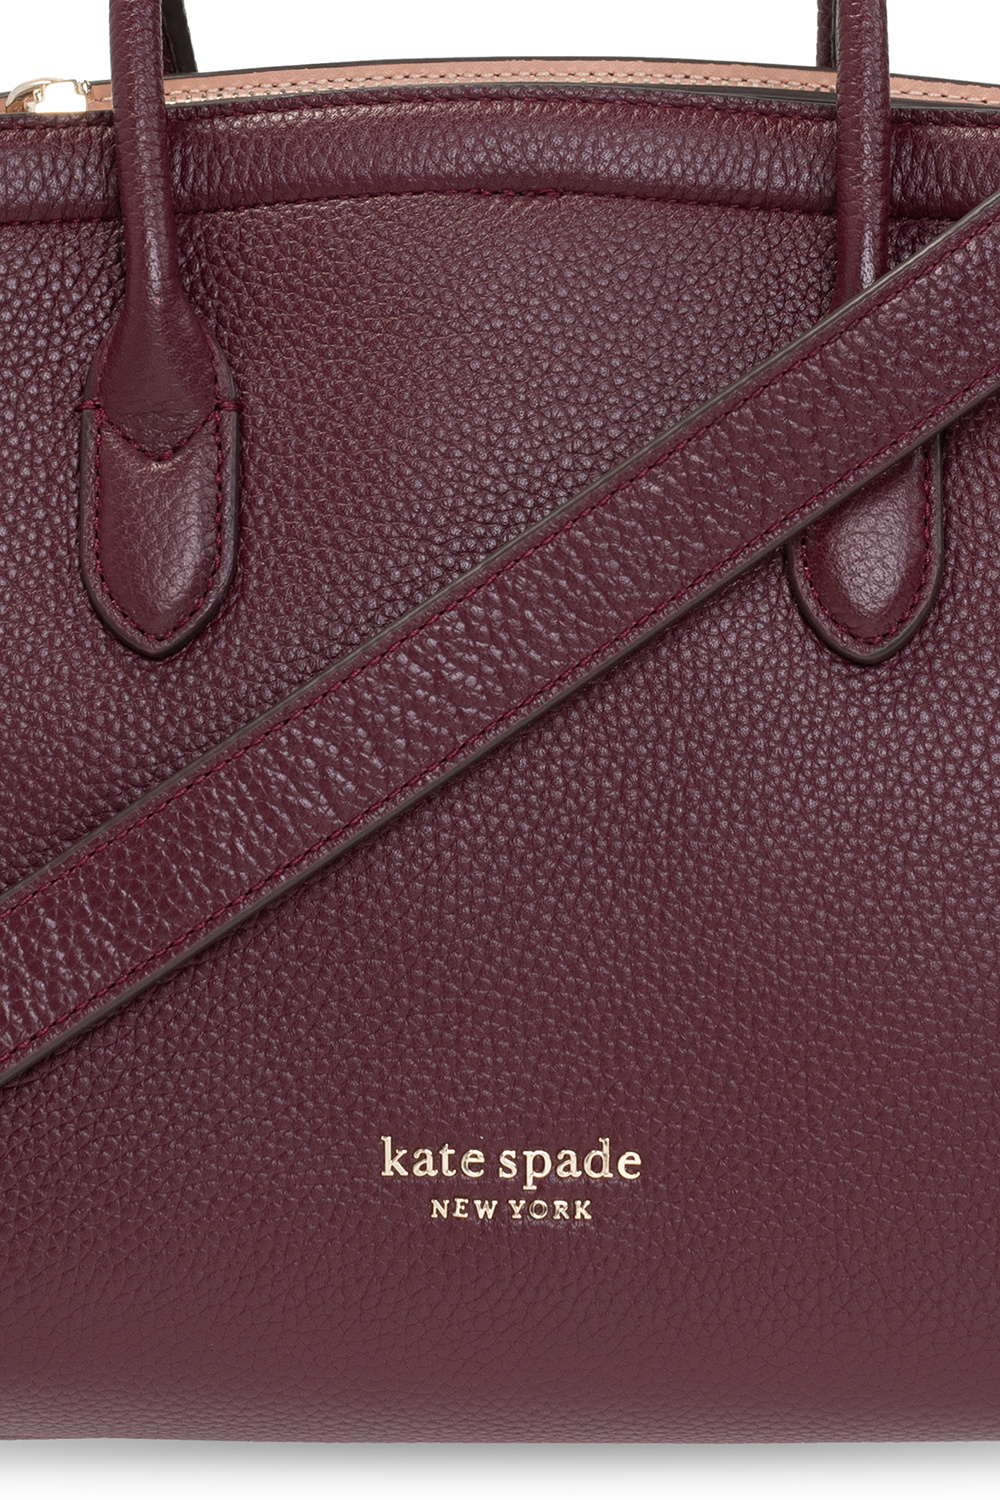 Kate Spade Shoulder bag with logo